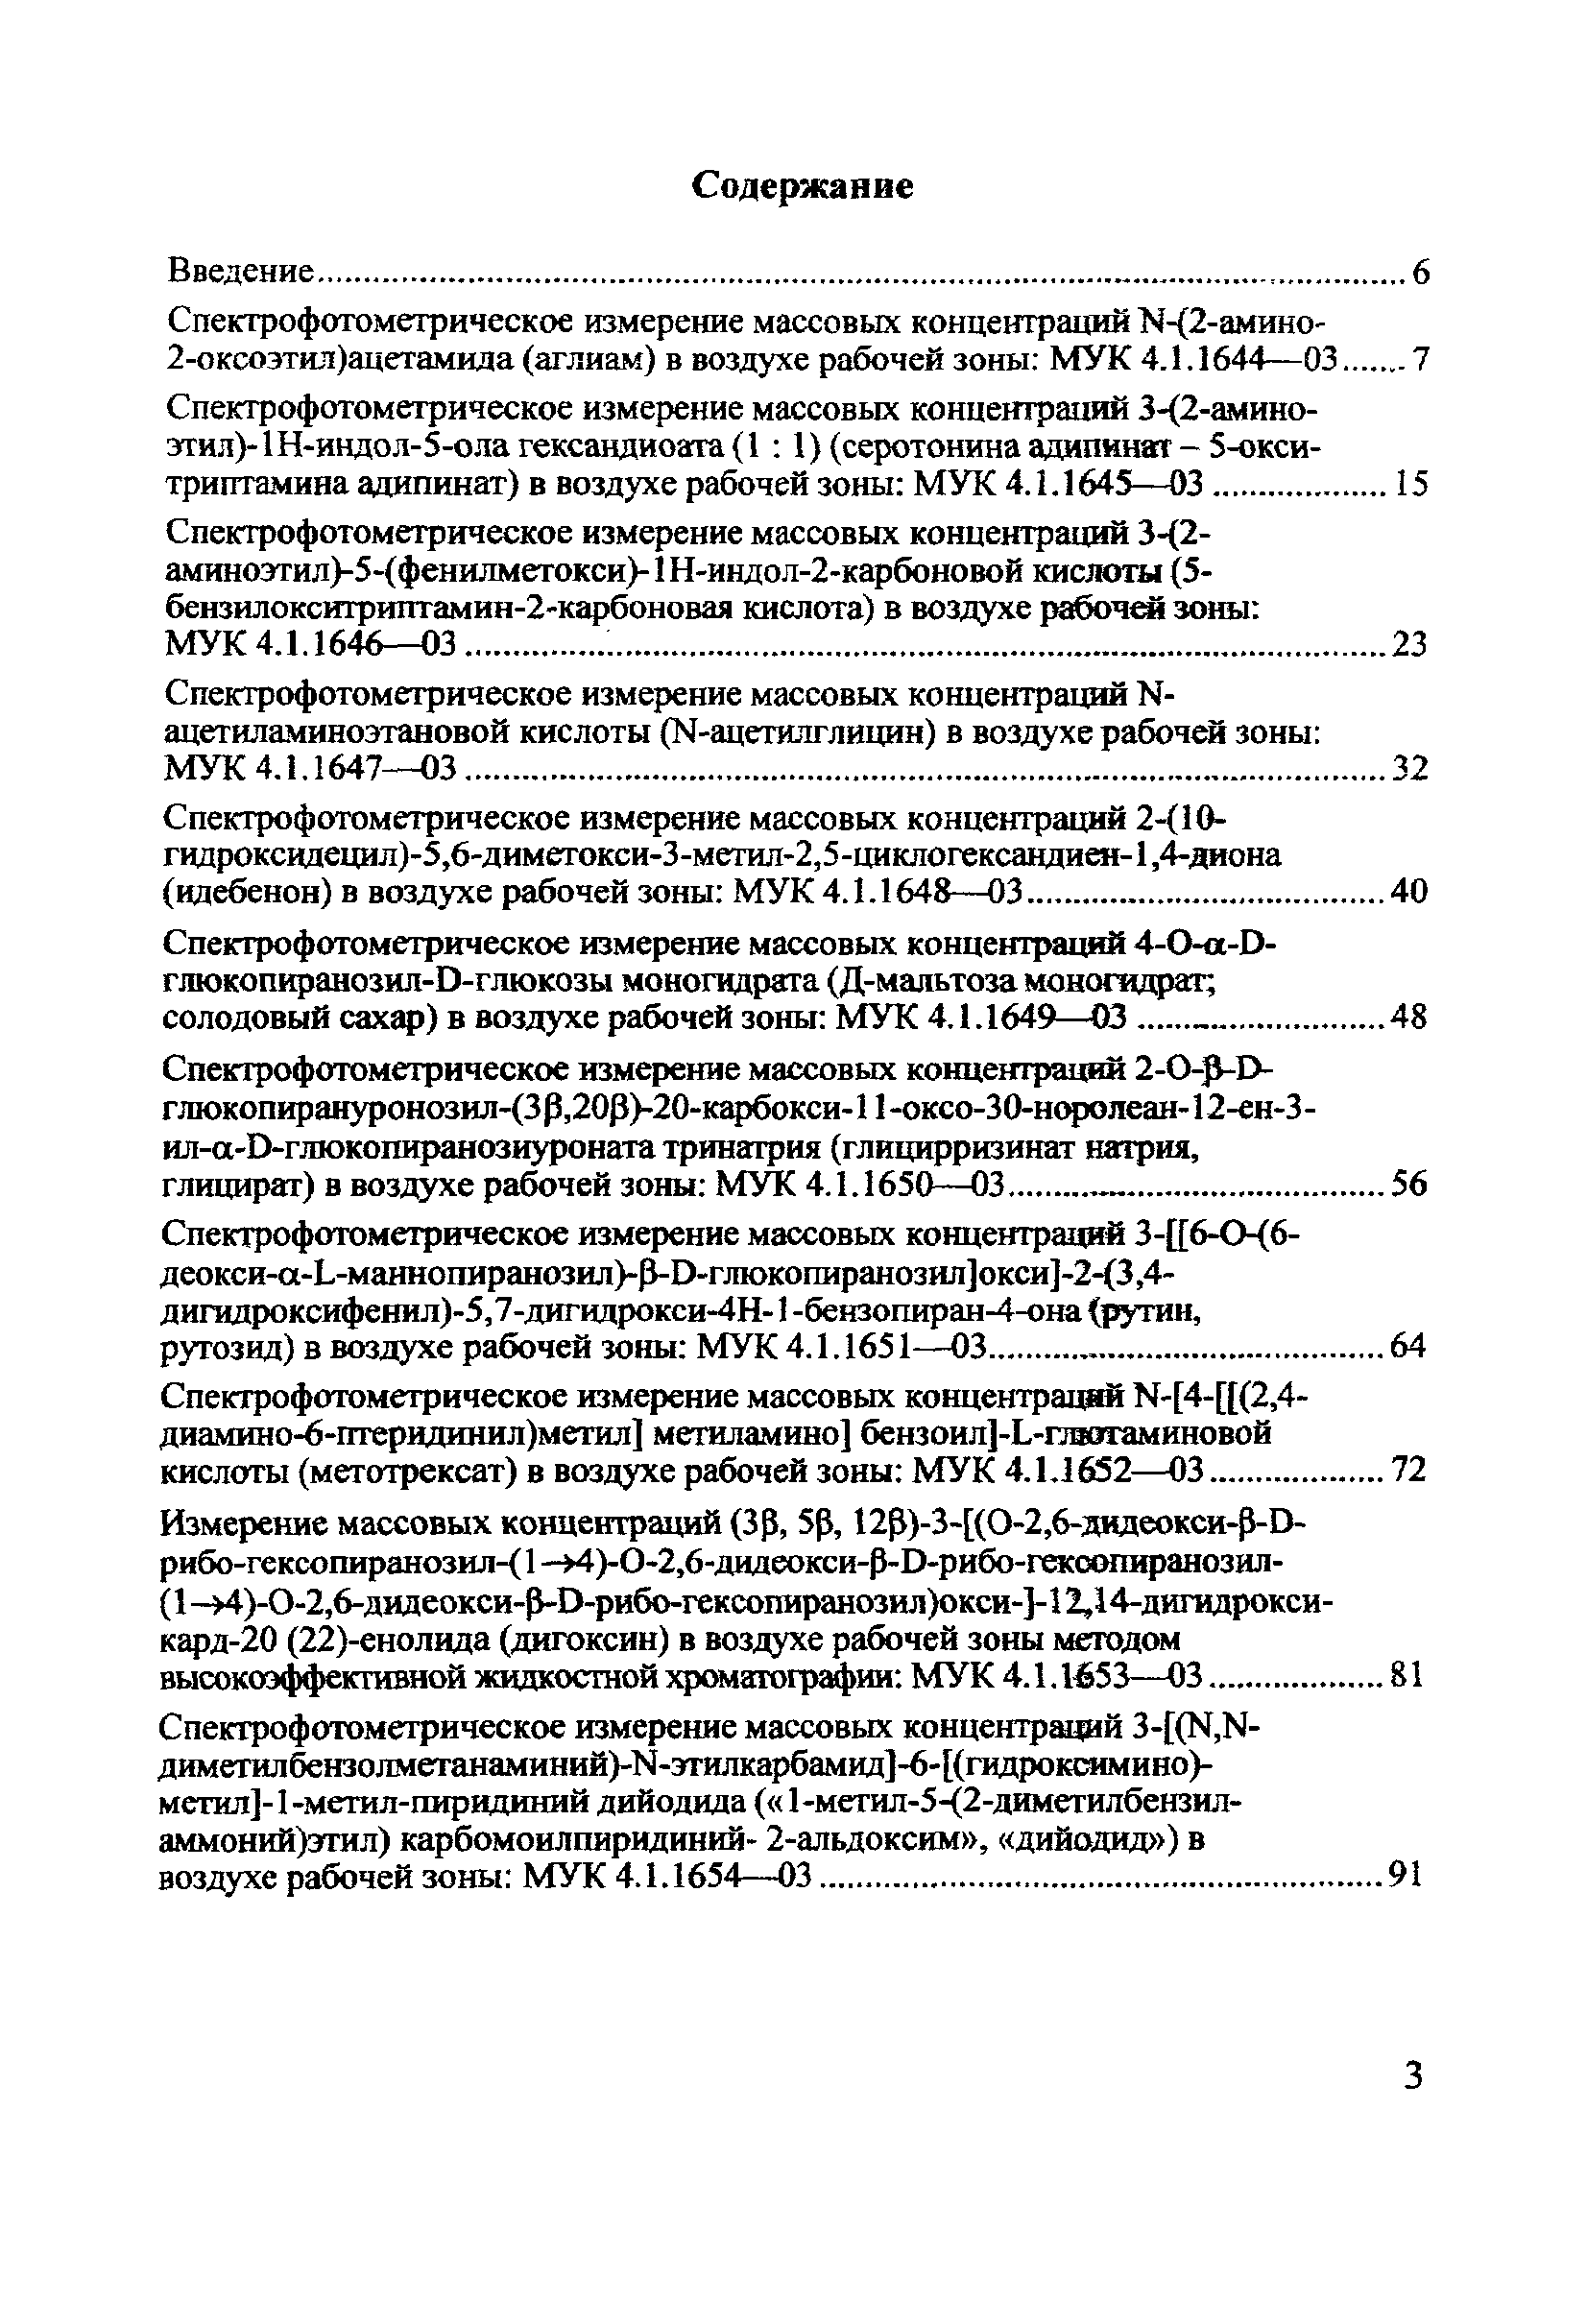 МУК 4.1.1649-03